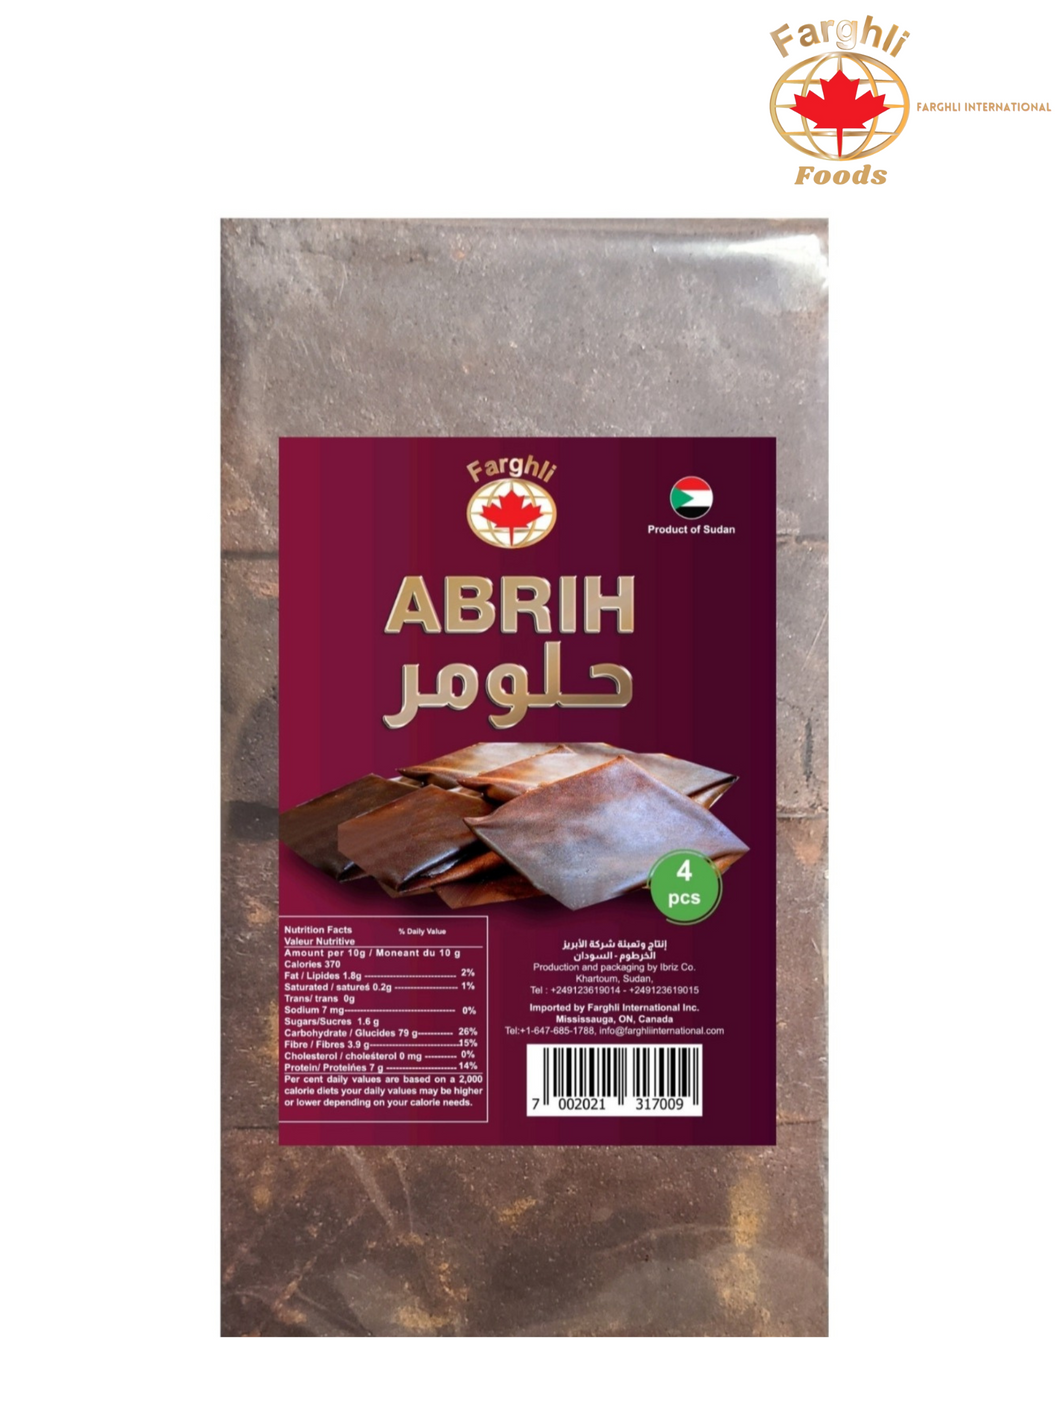 Abri ( حلومر ) sold in bag, 4 pcs in bag( 400 - 550 gm)